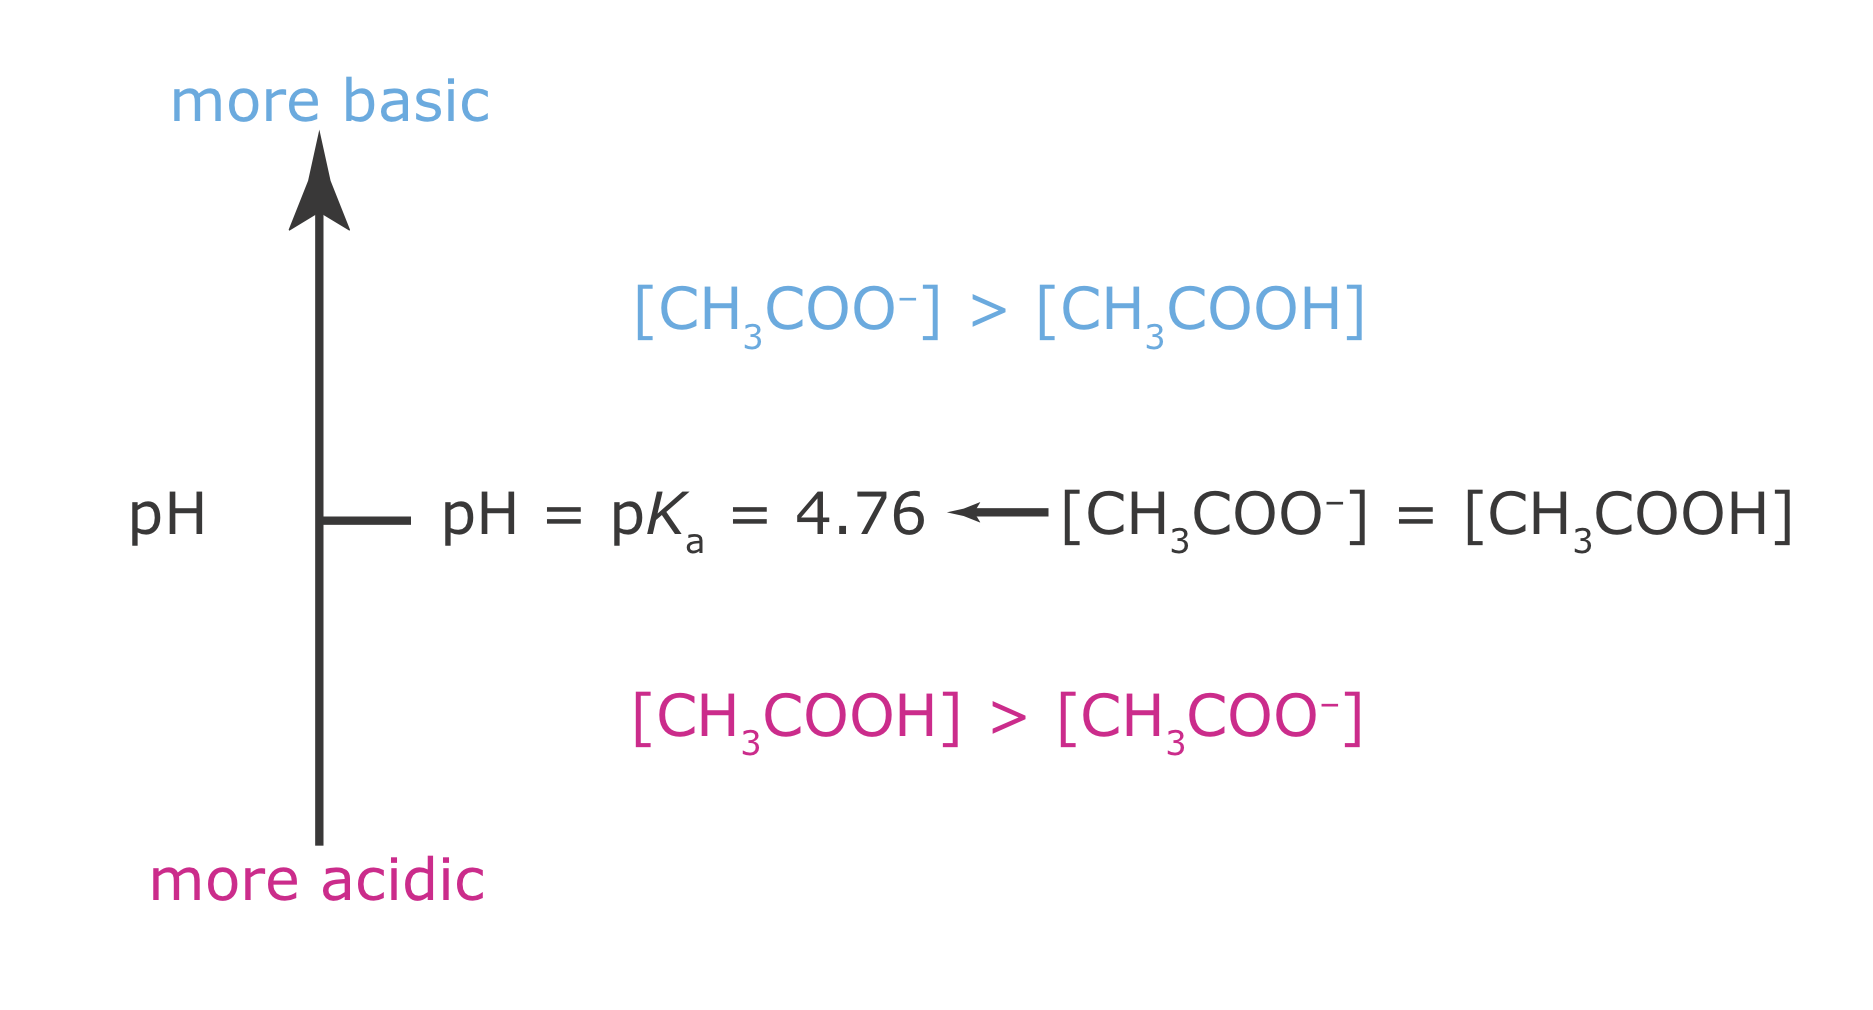 Con un pKa de 4.76, el Ácido Acético se desprotonó en su mayoría por encima del pH y en su mayoría se protonó a un pH por debajo de ese. Hay concentraciones iguales de ácido acético protonado y desprotonado a pH 4.76.